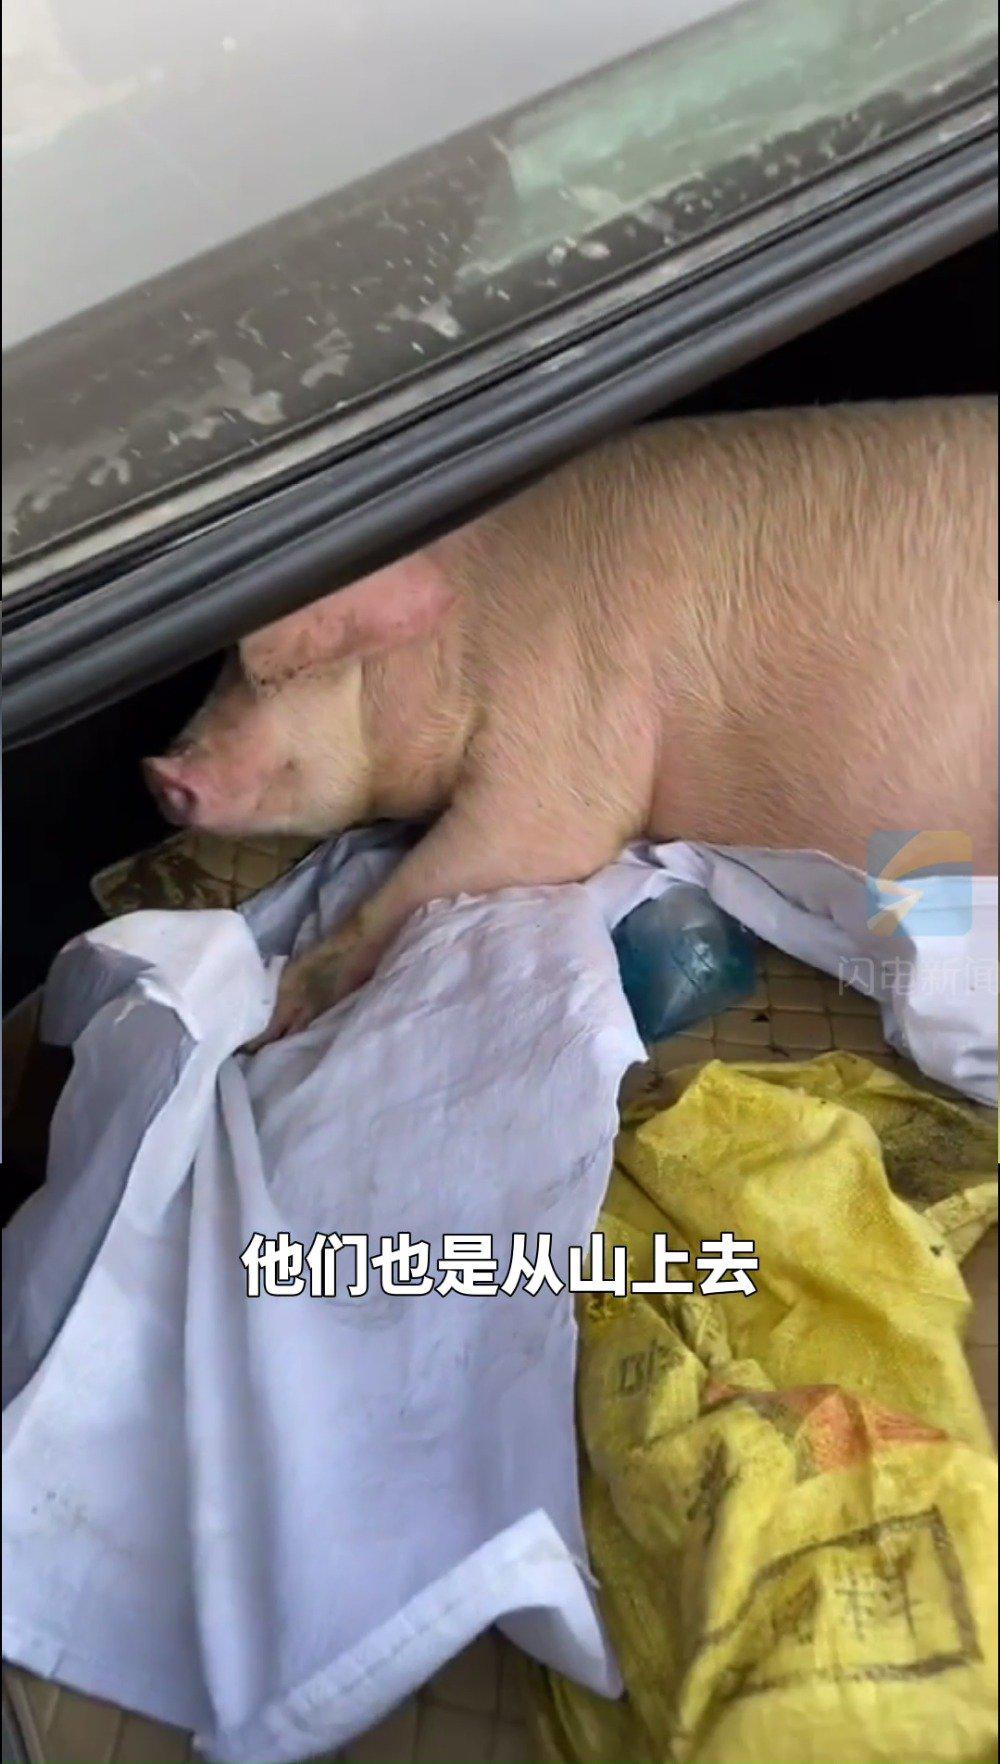 一头猪在车上的照片图片